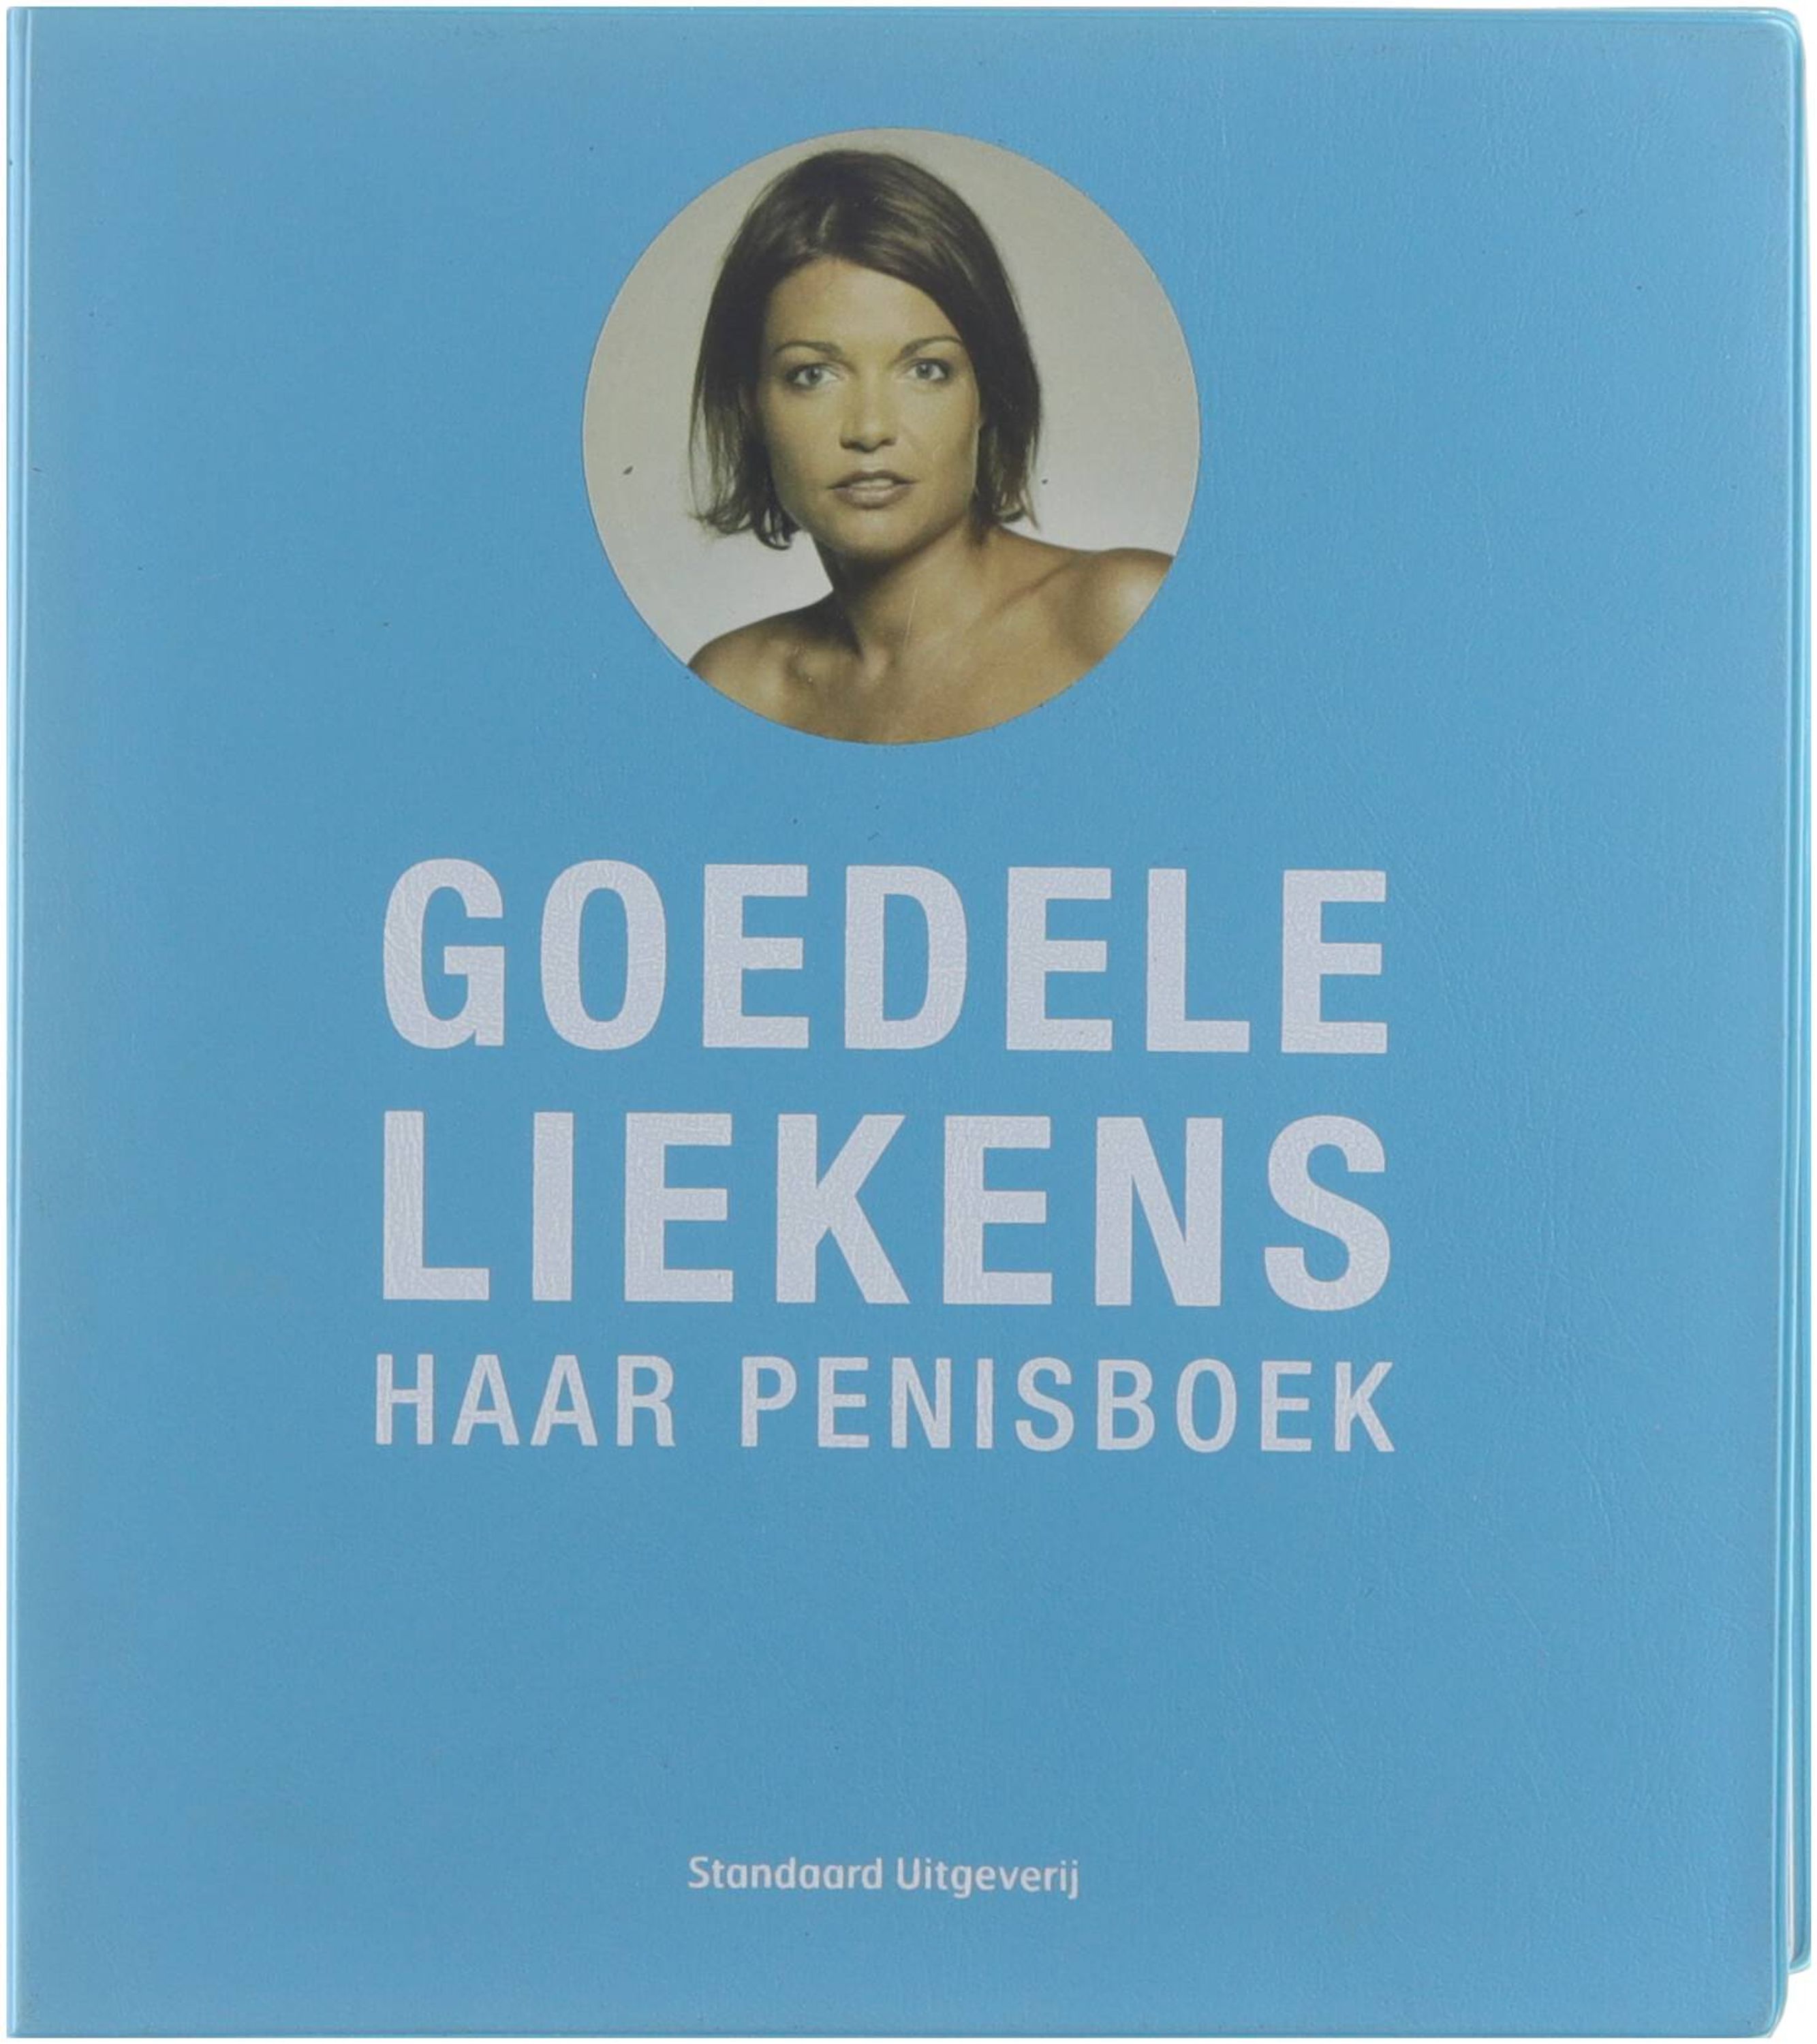 Haar penisboek - Liekens Goedele 1963-